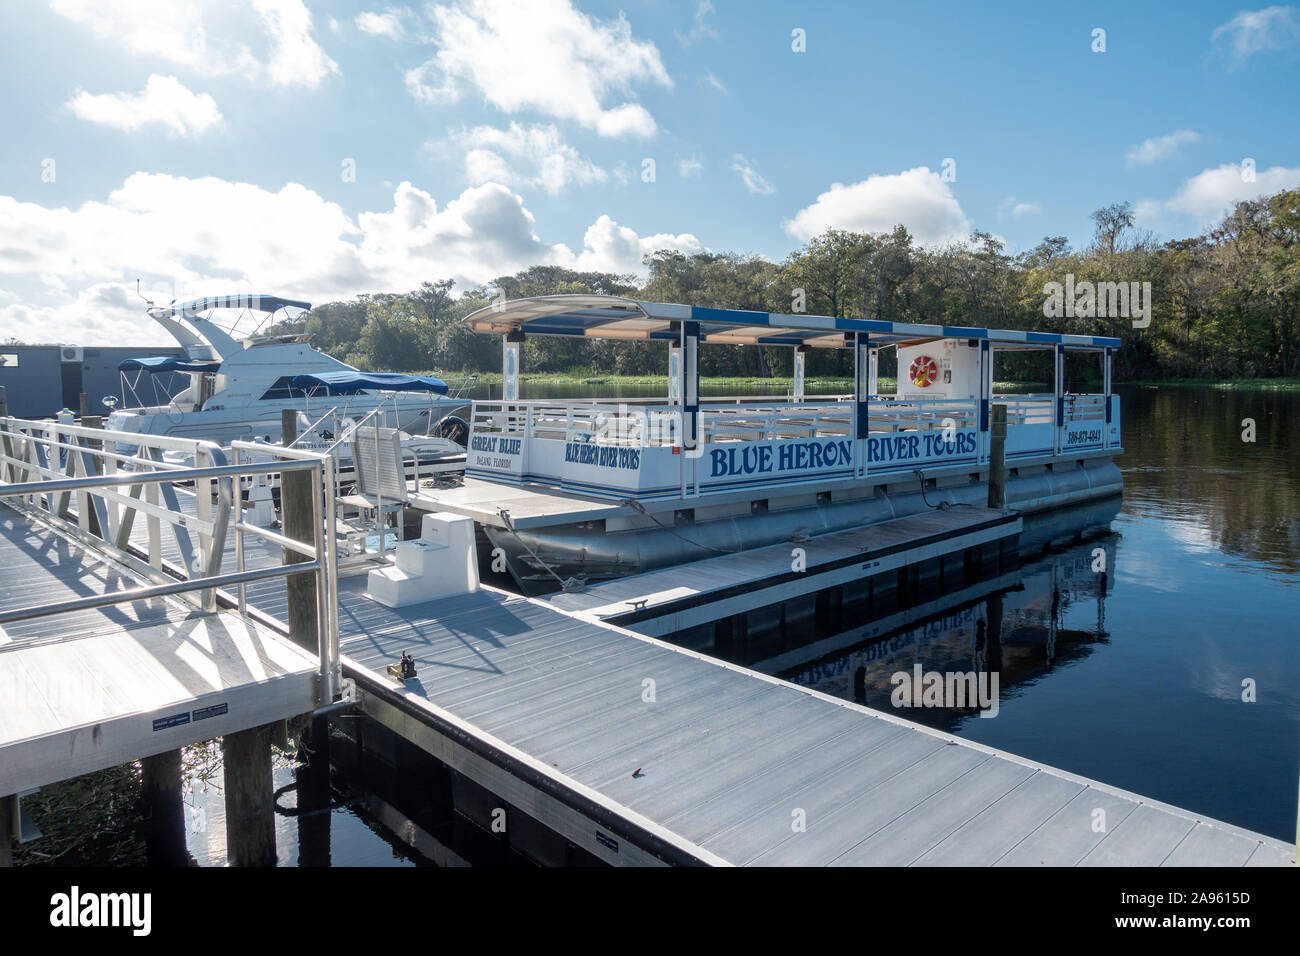 Blue Heron paseos fluviales Pontoon Boat amarrados en el St John's River DeLand Florida USA Foto de stock